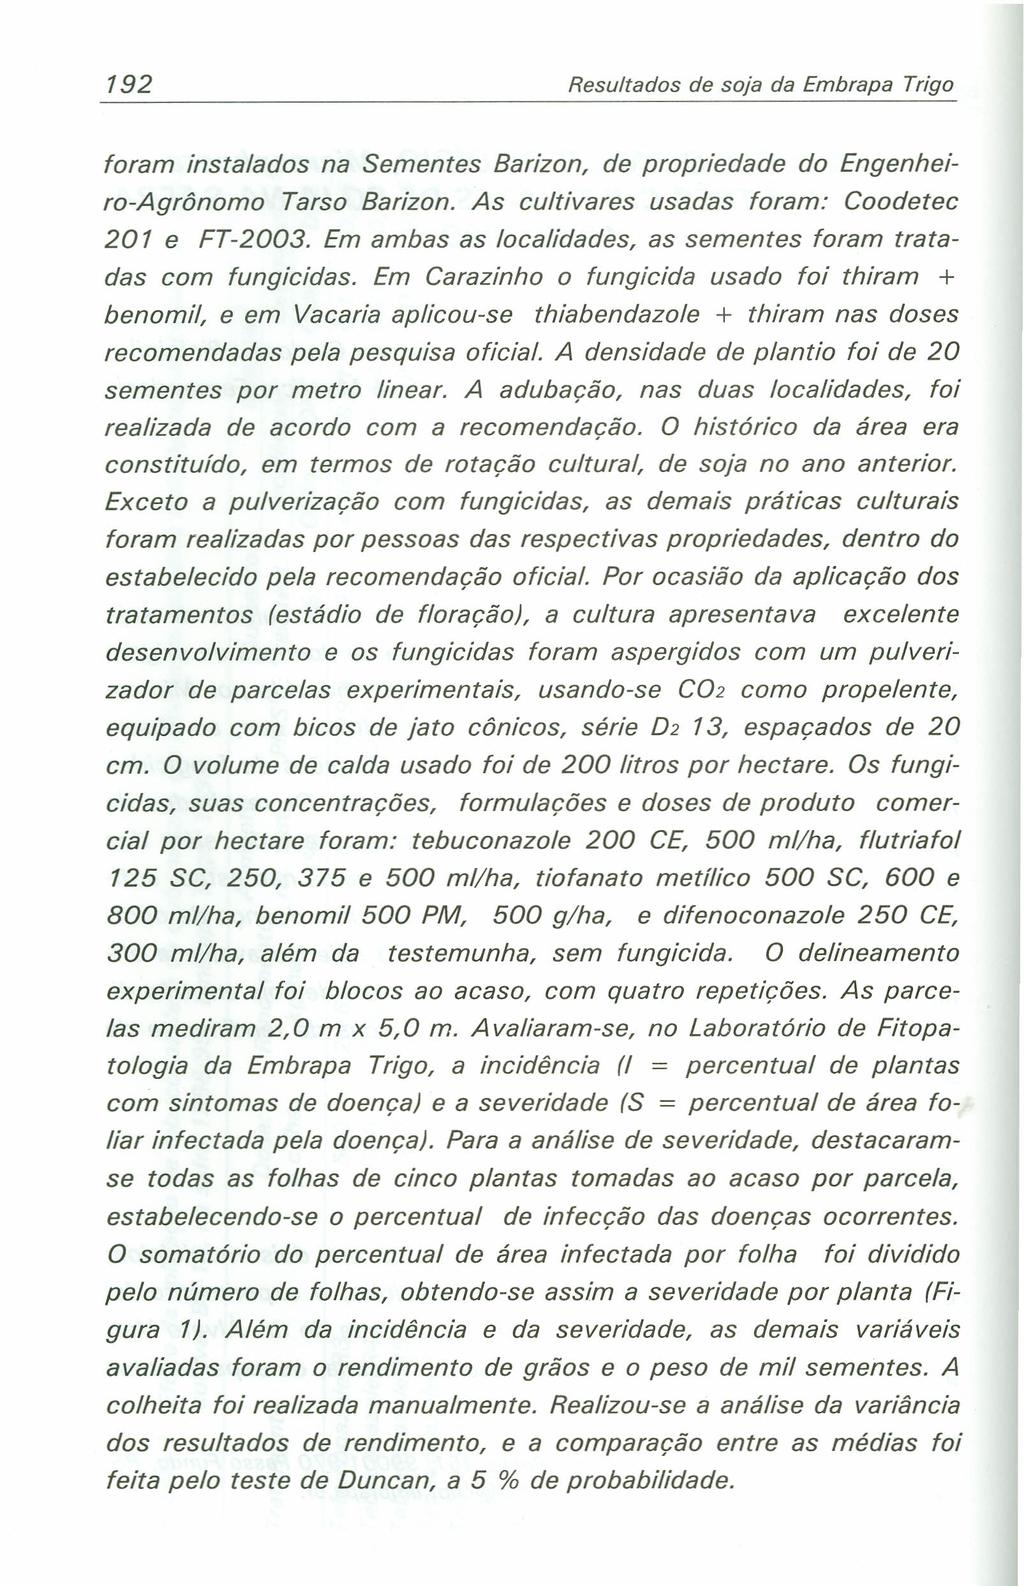 192 Resultados de soja da Embrapa Trigo foram instalados na Sementes Barizon, de propriedade do Engenheiro-Agrônomo Tarso Barizon. As cultivares usadas foram: Coodetec 201 e FT-2003.